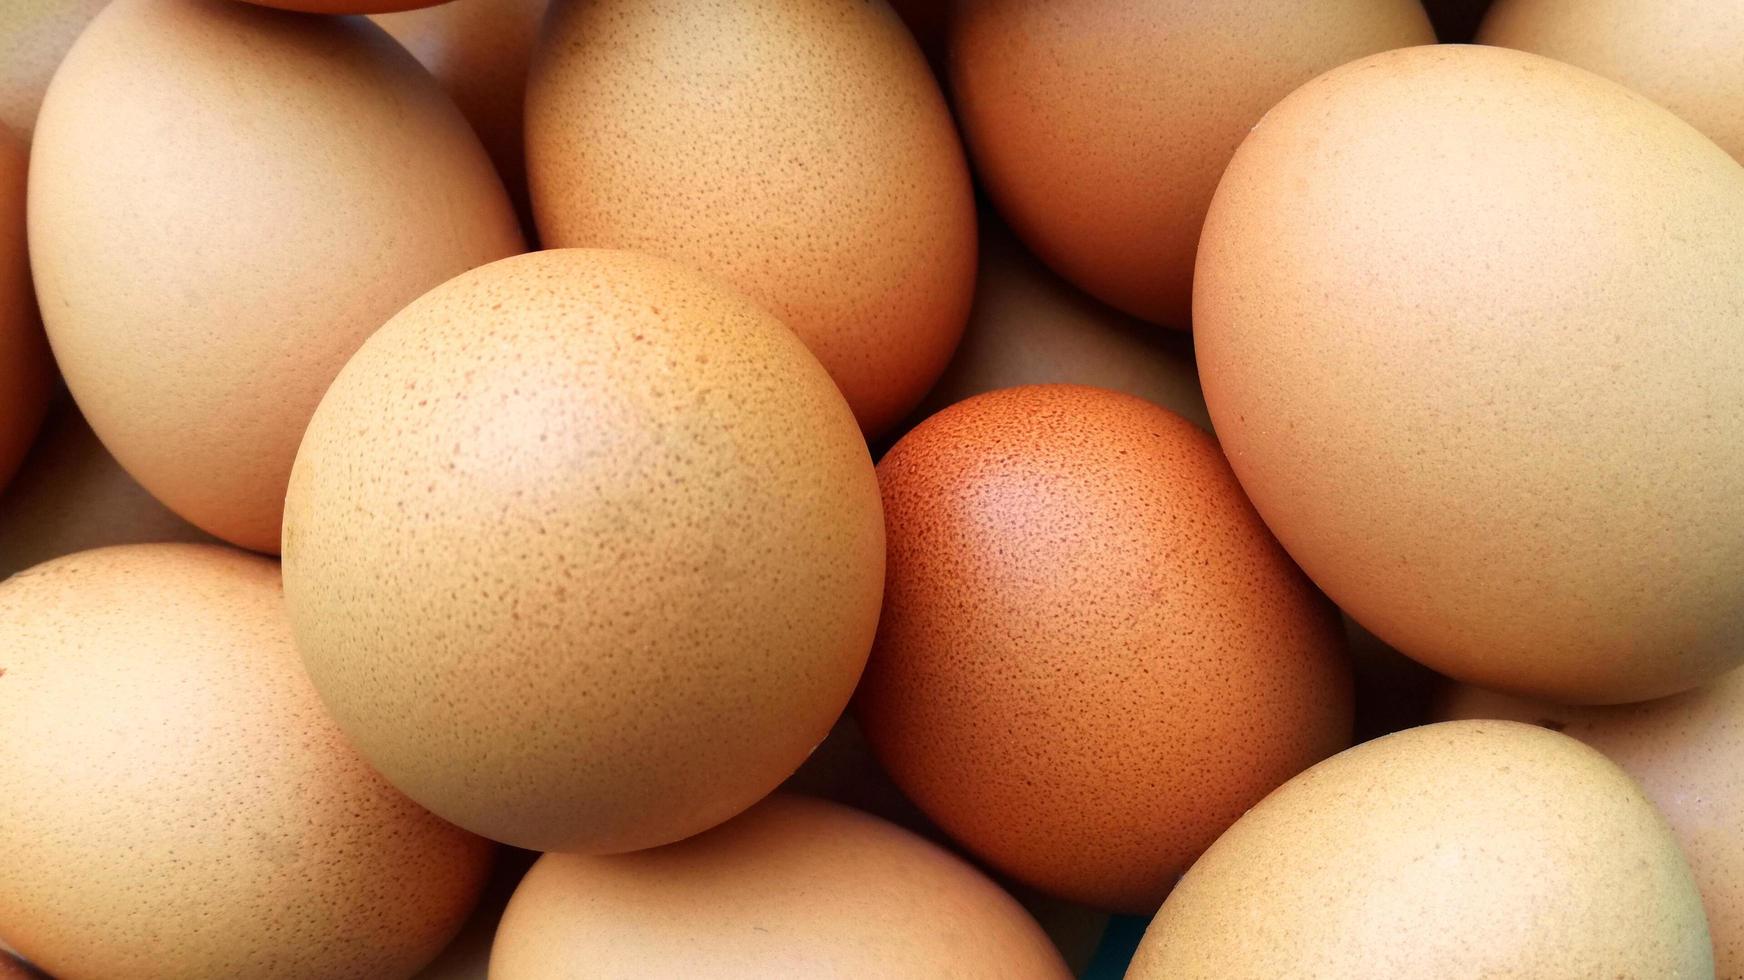 casca de ovo de galinha marrom tem bom valor nutricional para o corpo. foto